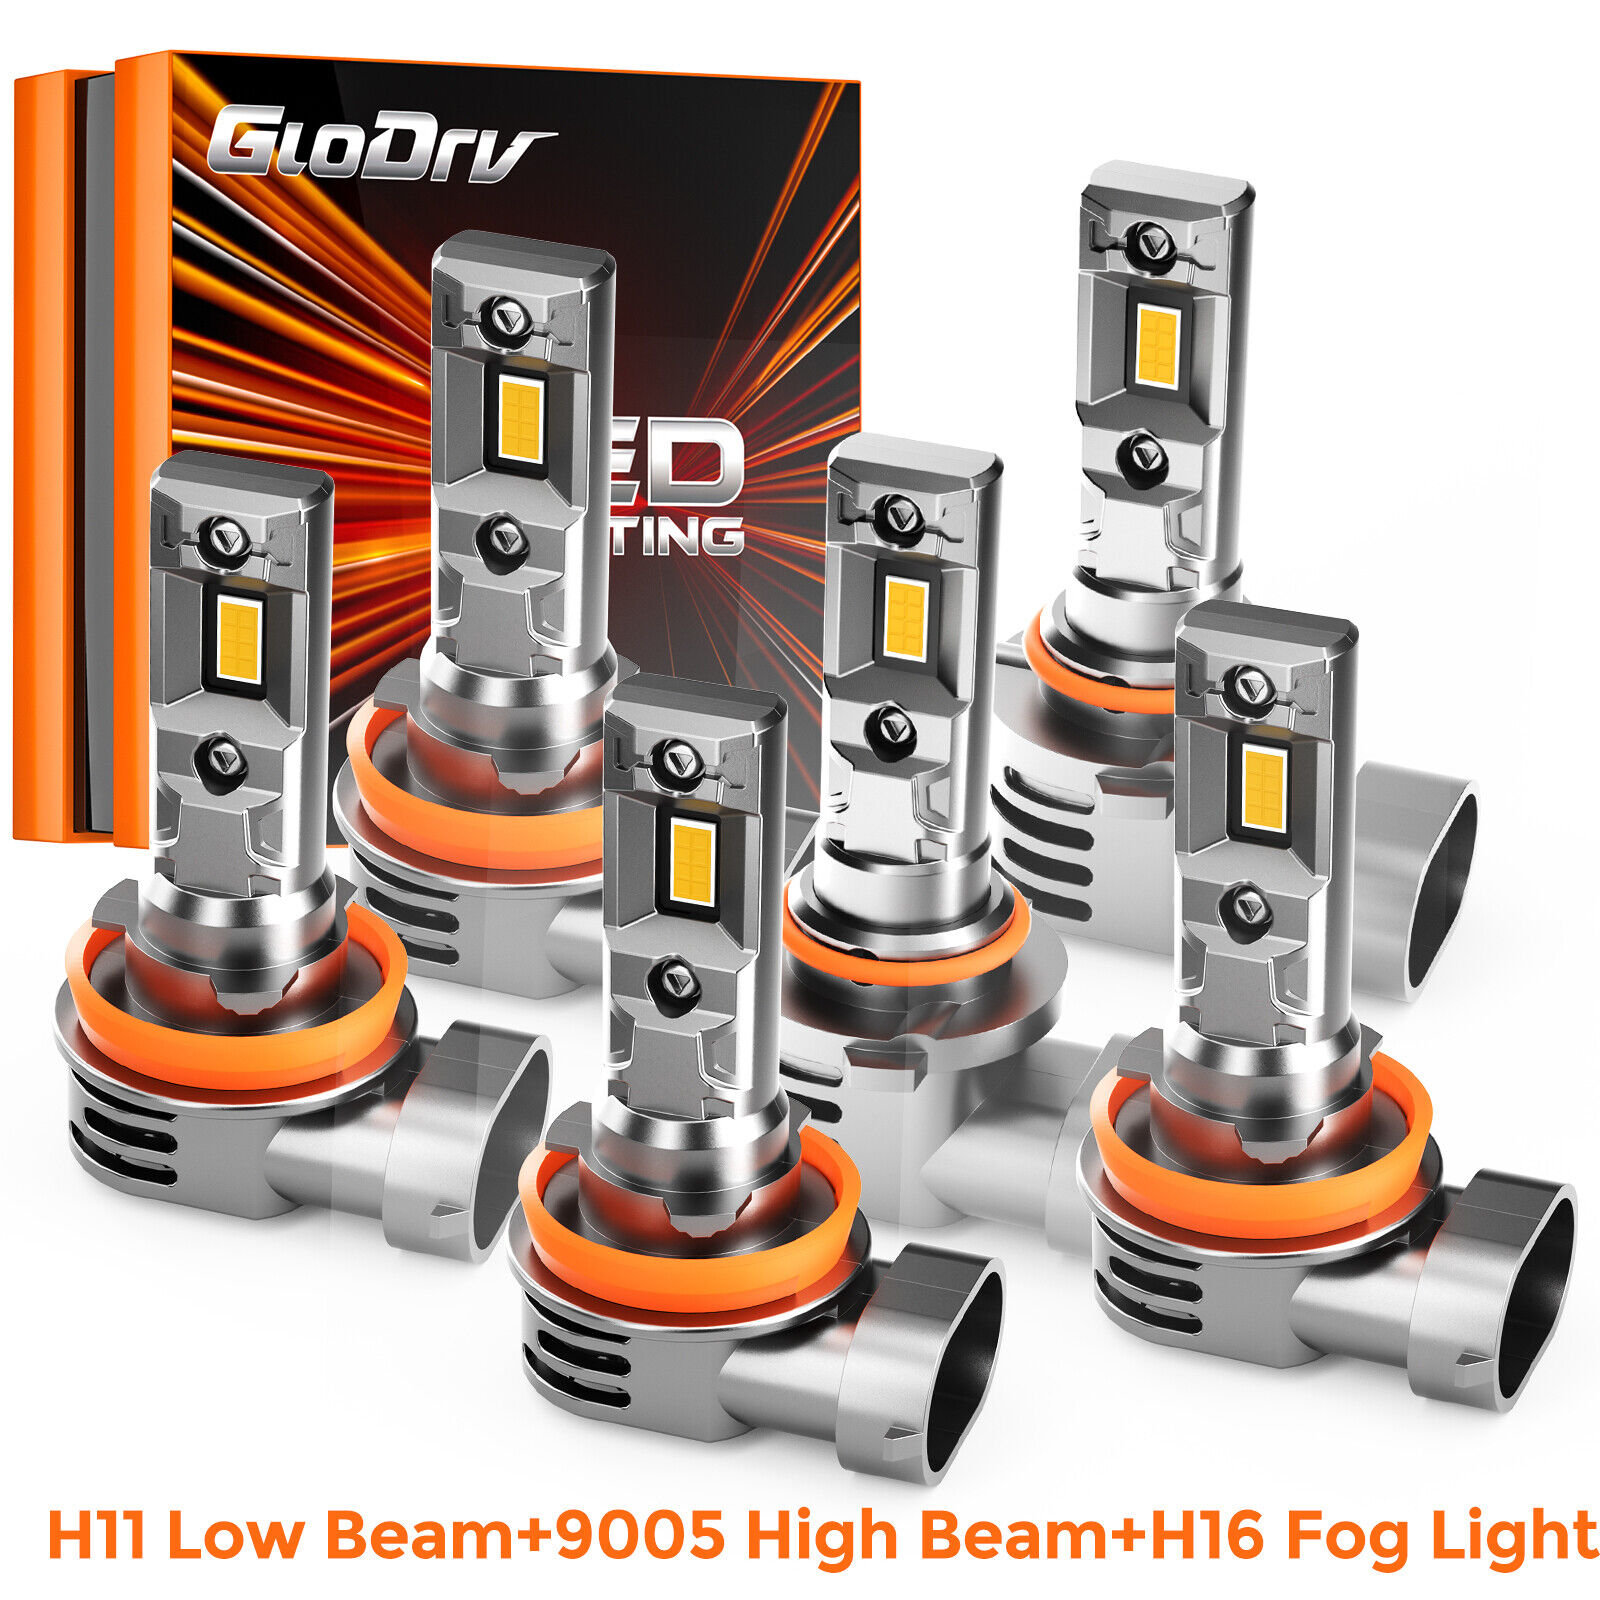 GloDrv H11+H11+9005 LED Combo Headlight High+Low Beam+Fog Light Bulb 3Pair White